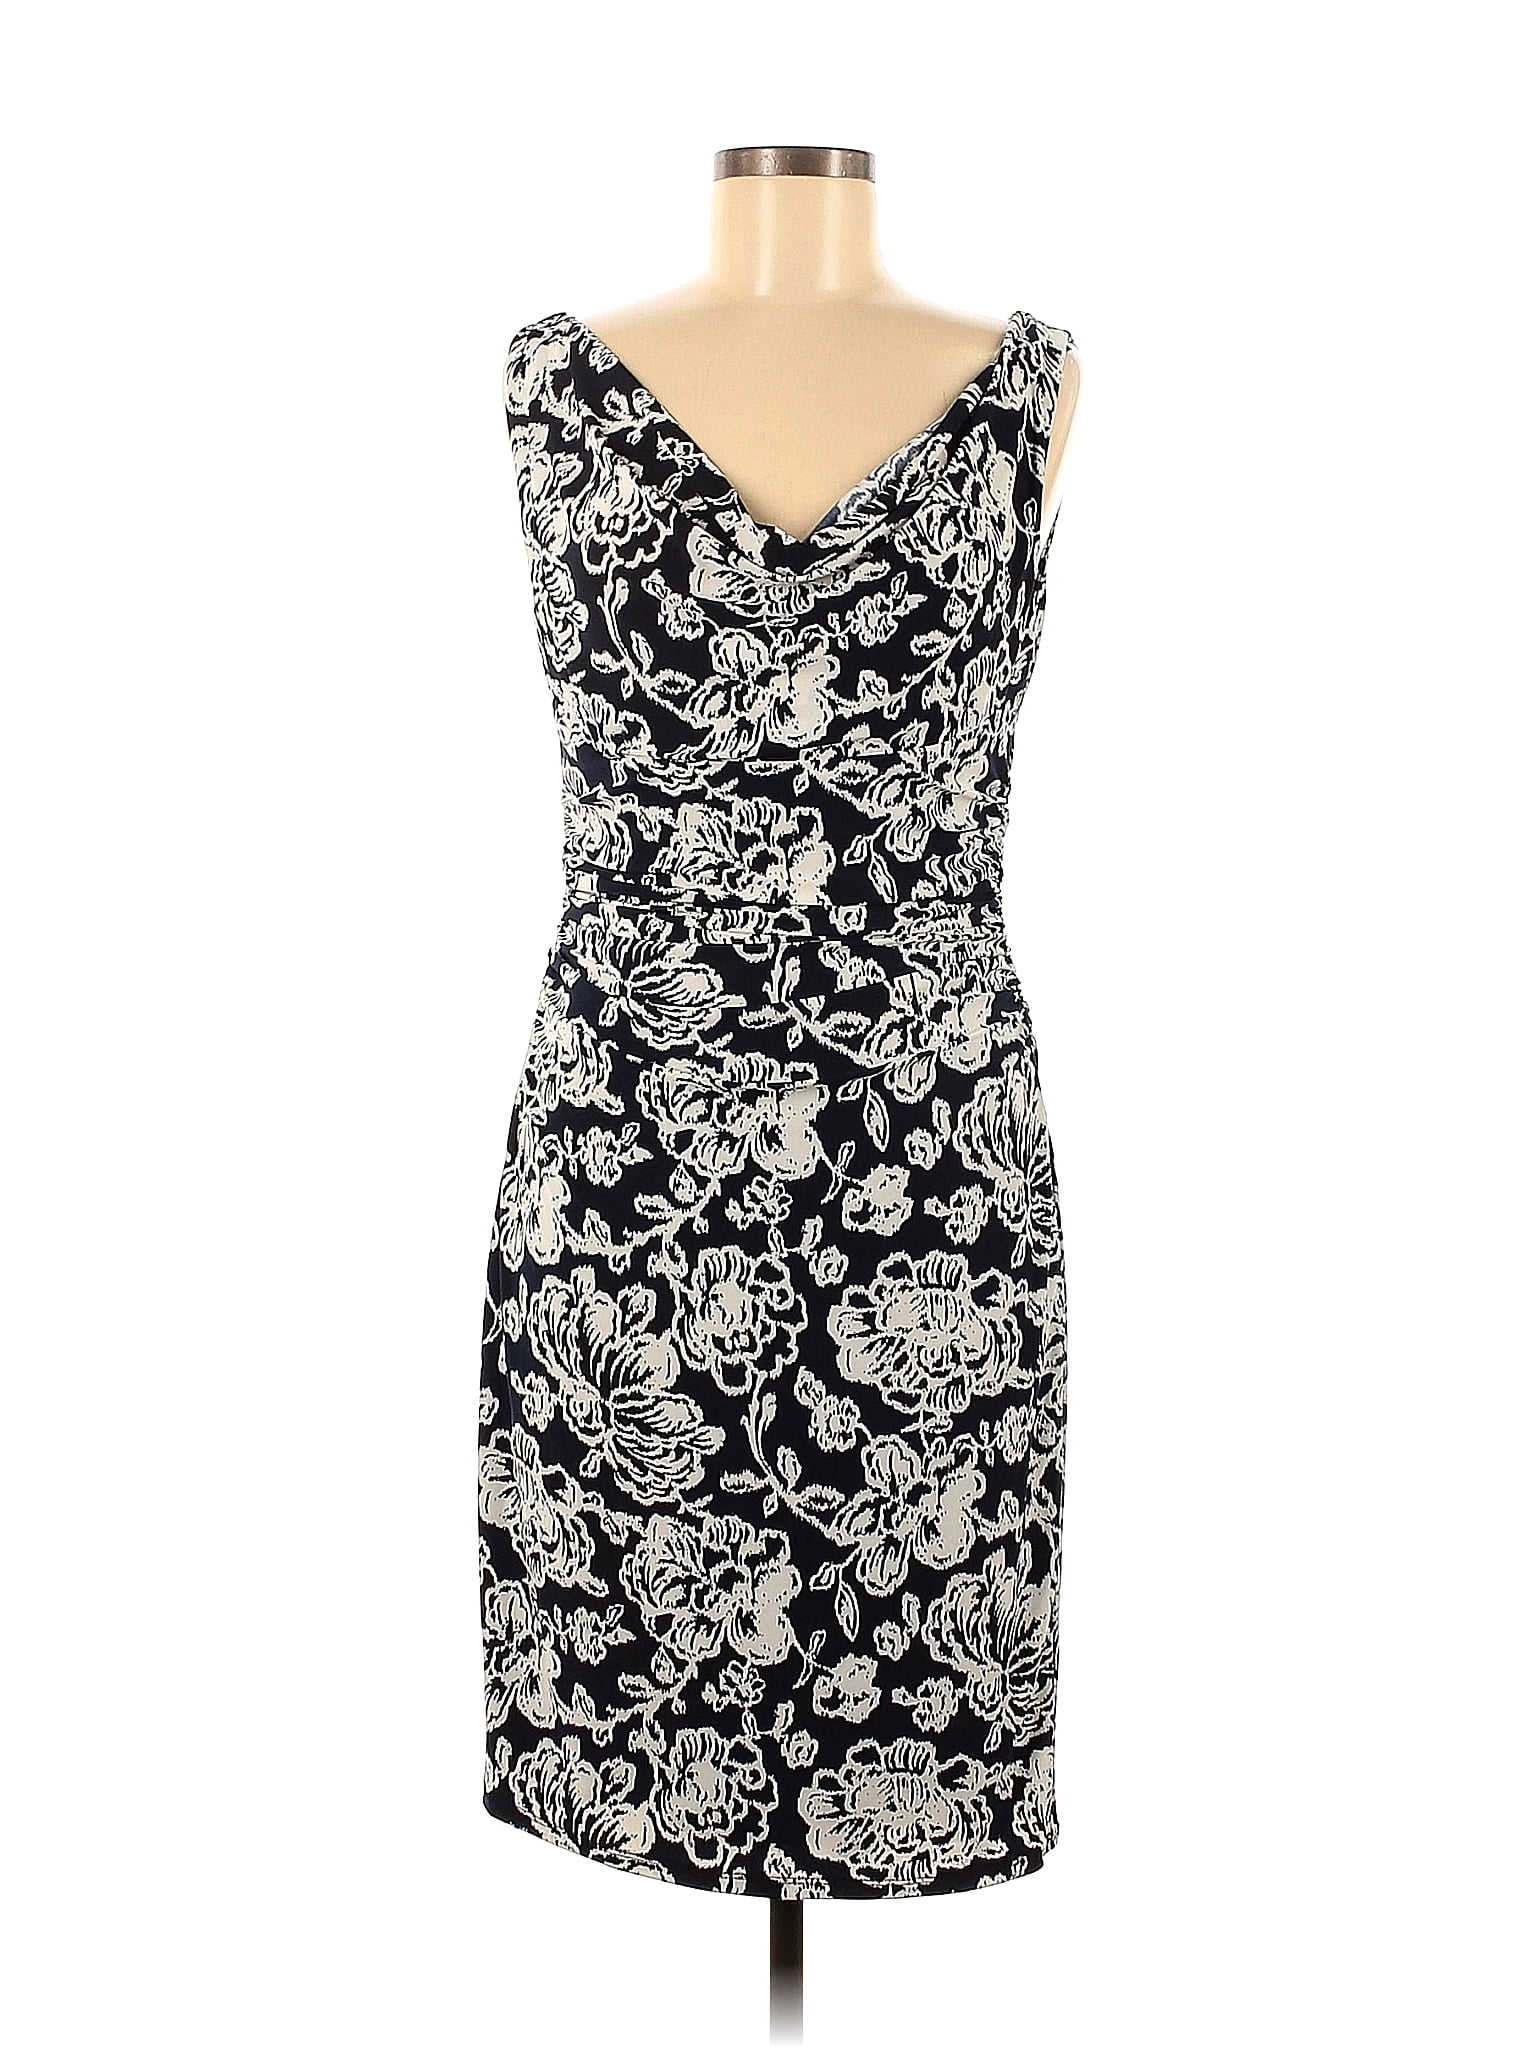 Lauren by Ralph Lauren Black Casual Dress Size 8 - 74% off | thredUP